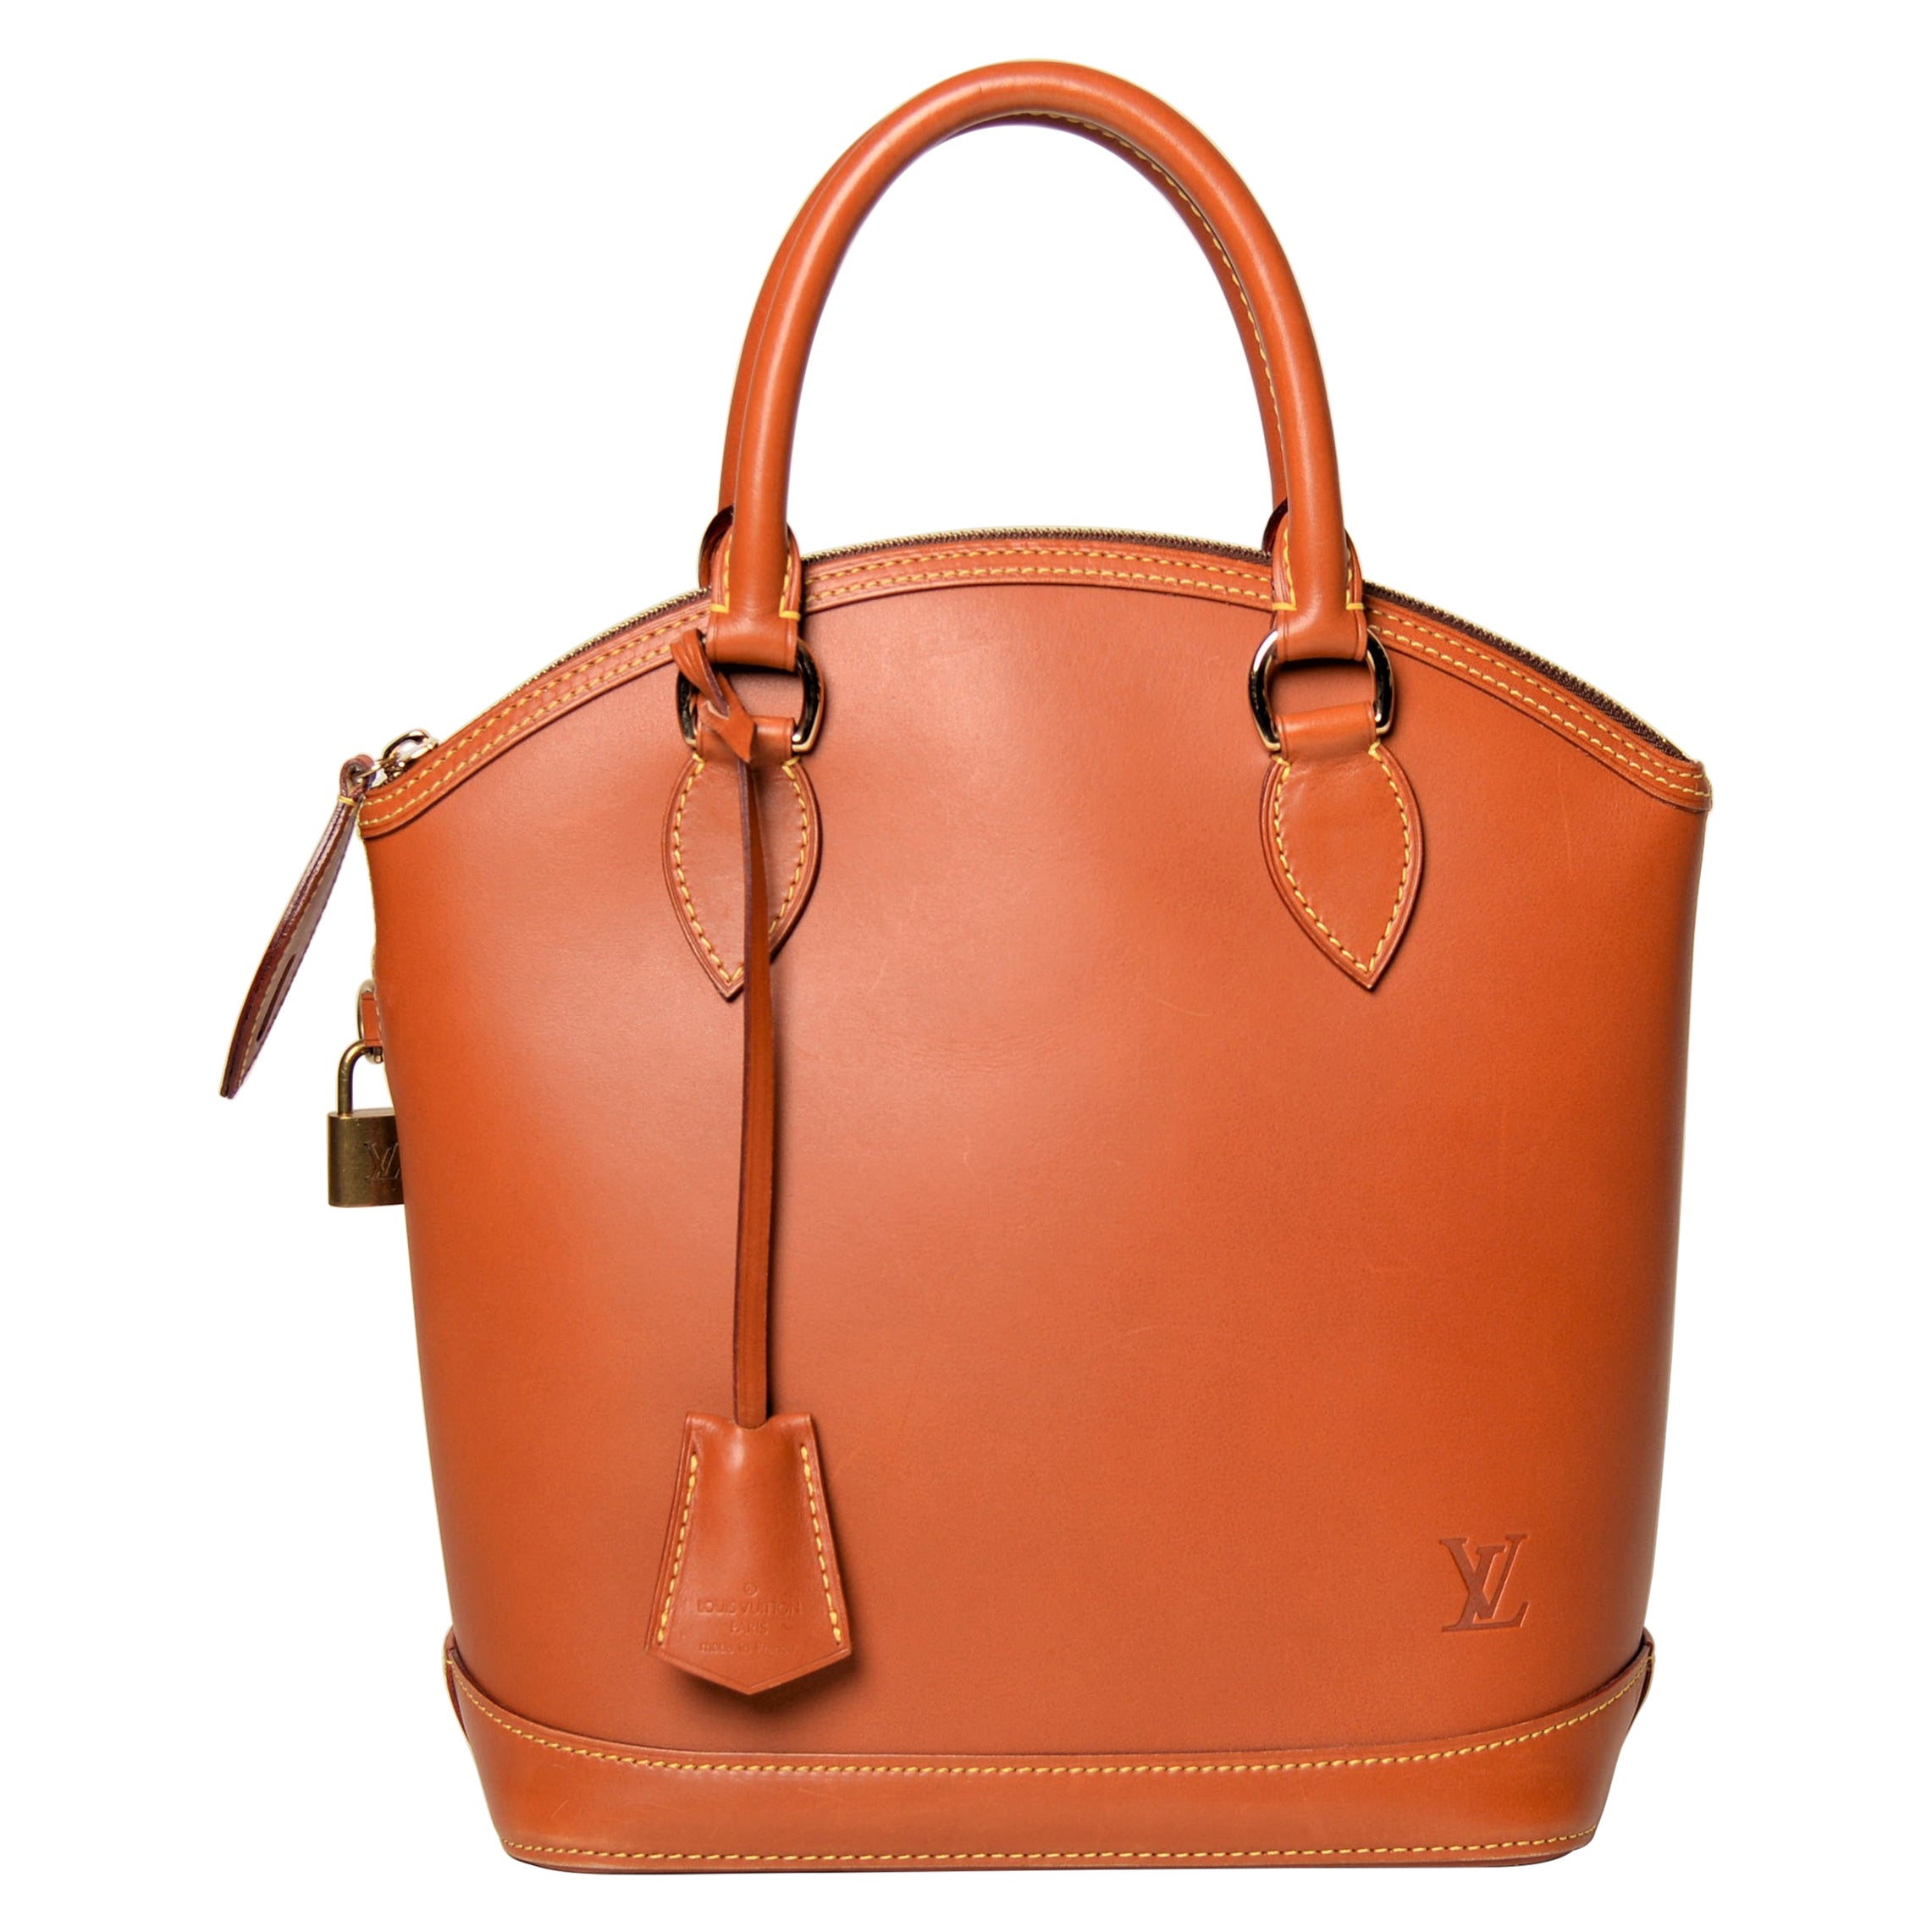 Louis Vuitton Lockit Bag Caramel Nomade Leather